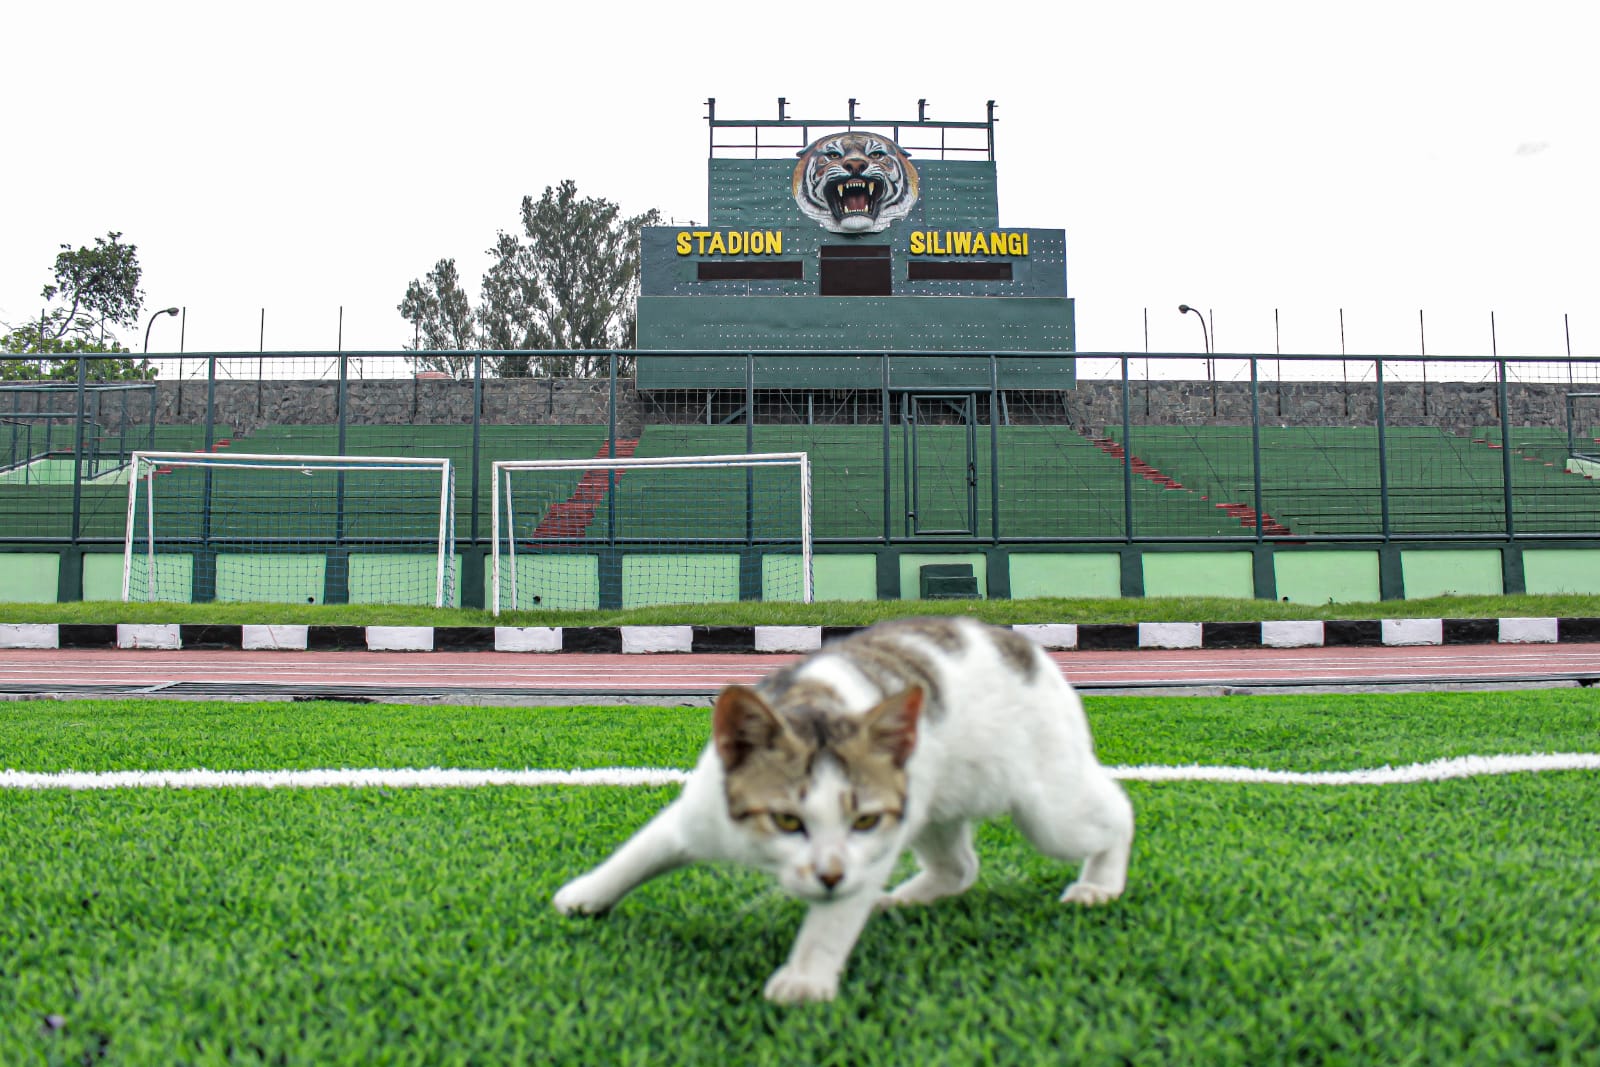 HEWAN PELIHARAAN: Kucing liar di Stadion Siliwangi. Warga diminta untuk menjaga kesehatan hewan peliharaan guna menghindari virus rabies.